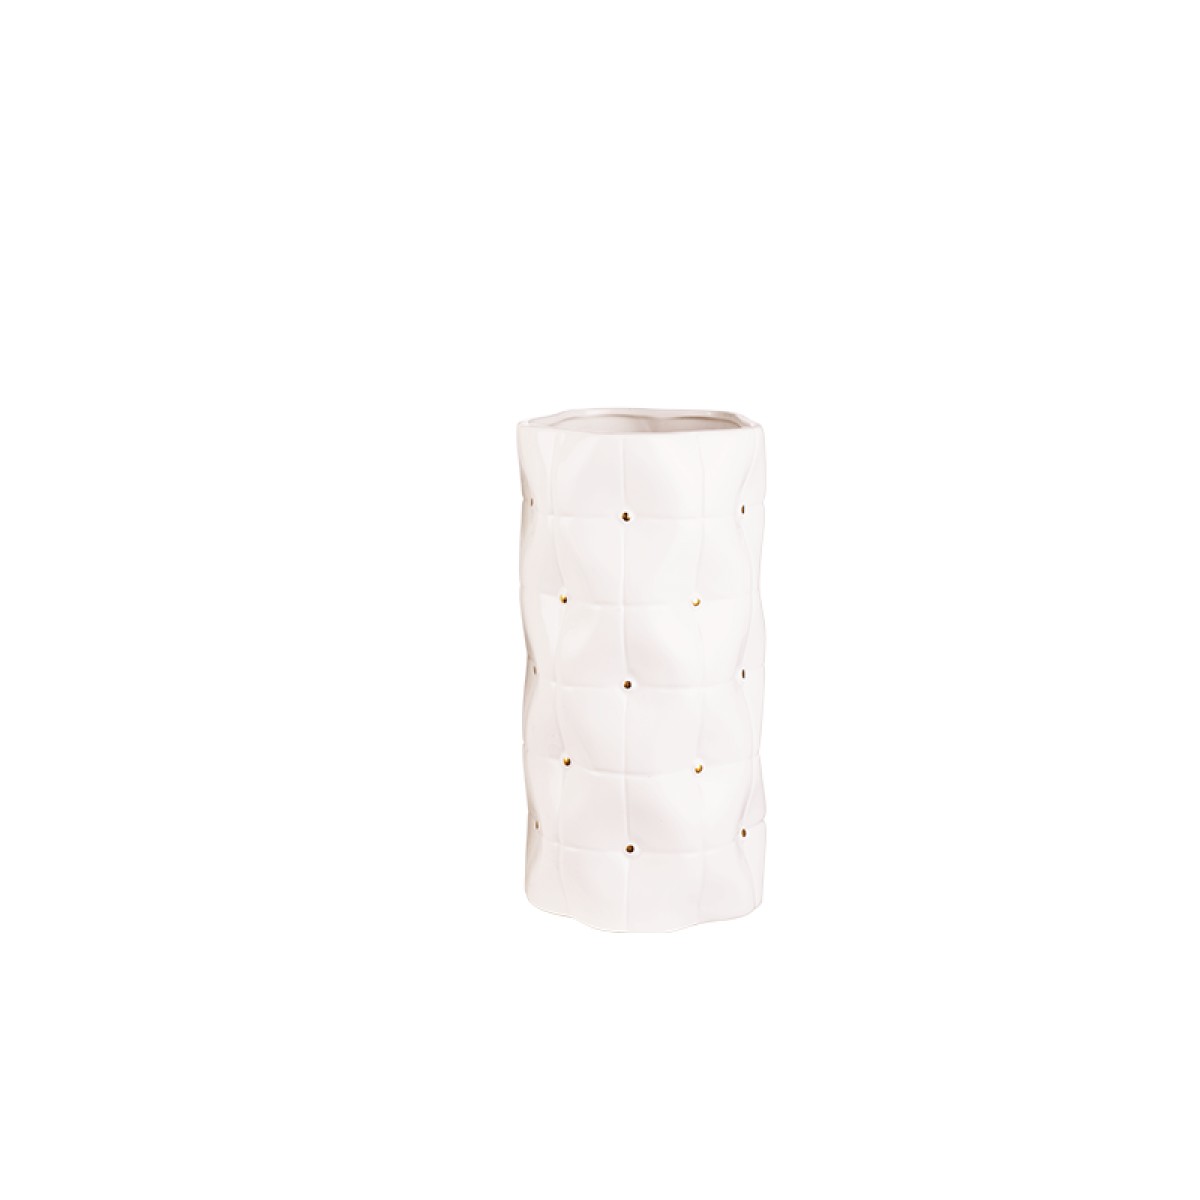 欧米亚-现代风格爱琴海花瓶(小)HP-05210